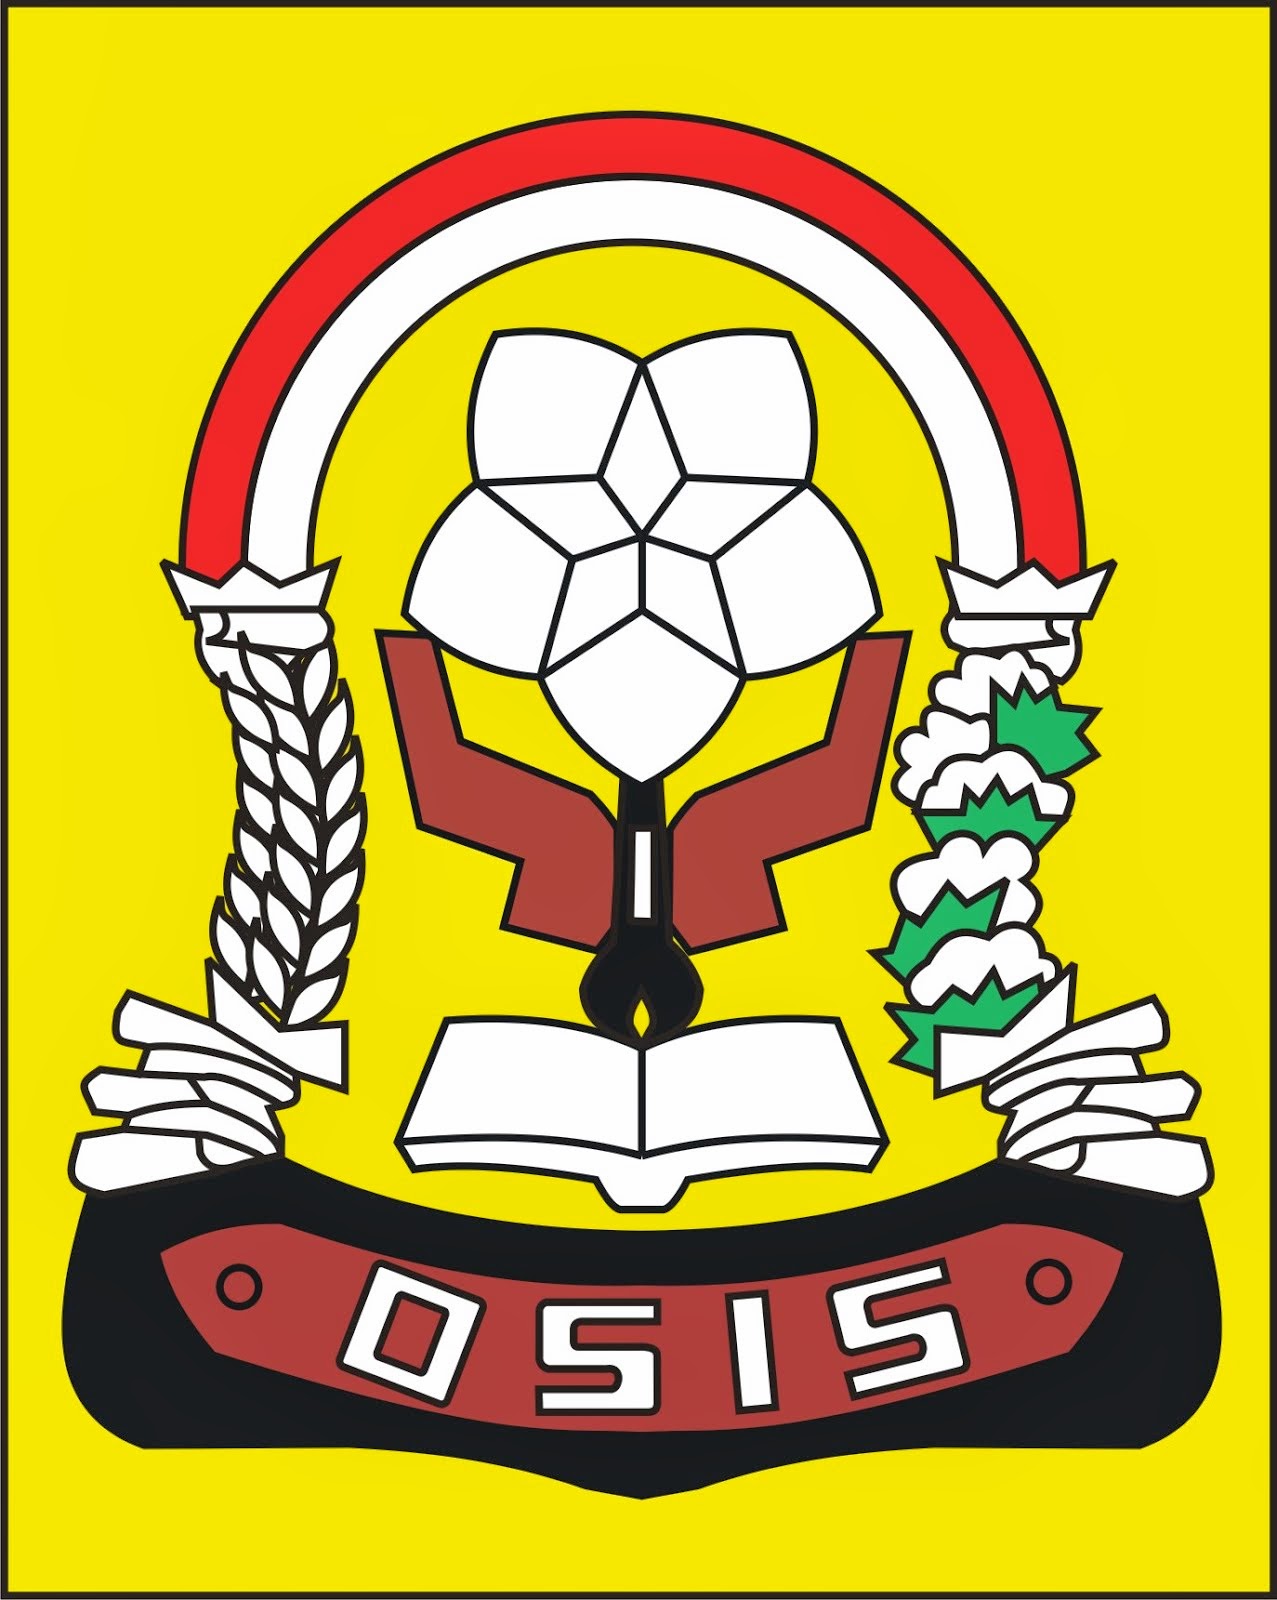 LOGO OSIS SMP  Gambar Logo